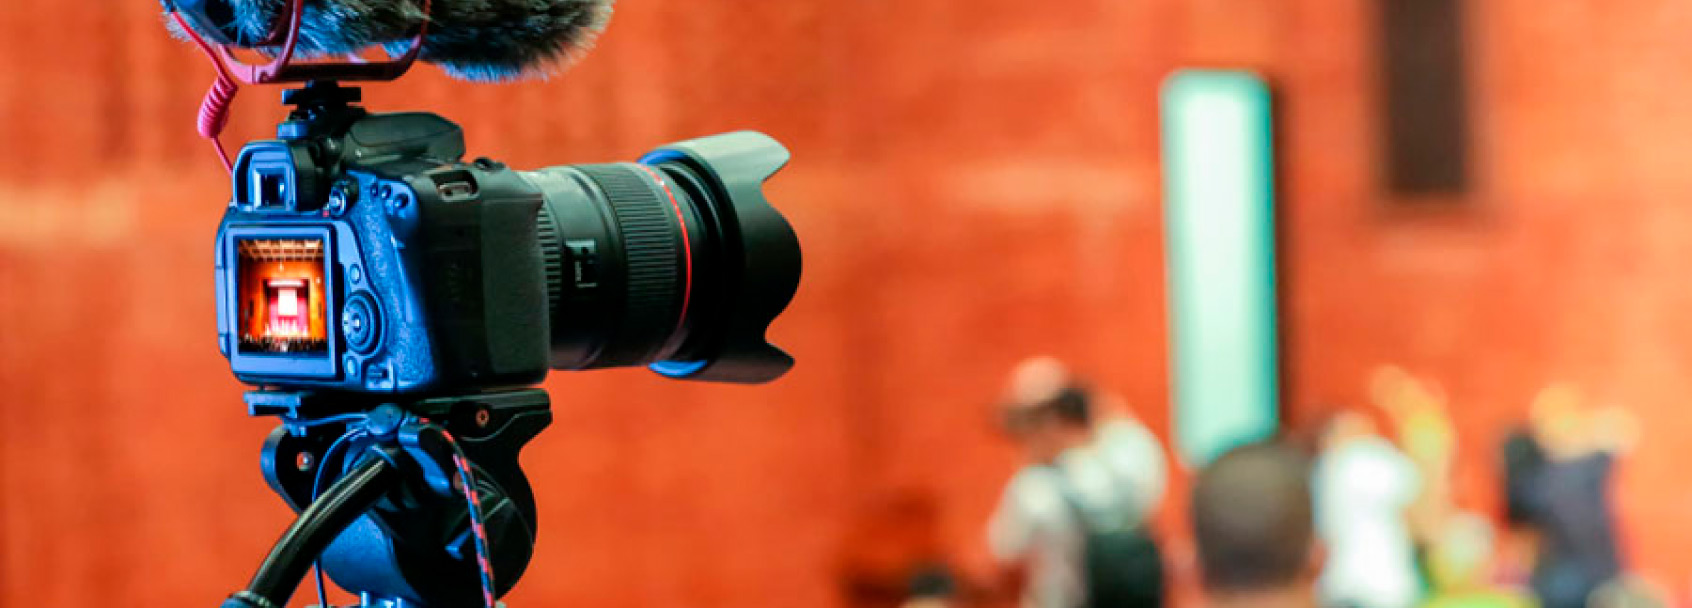 Estudiar Grabación de vídeo con cámaras DSLR en Granada